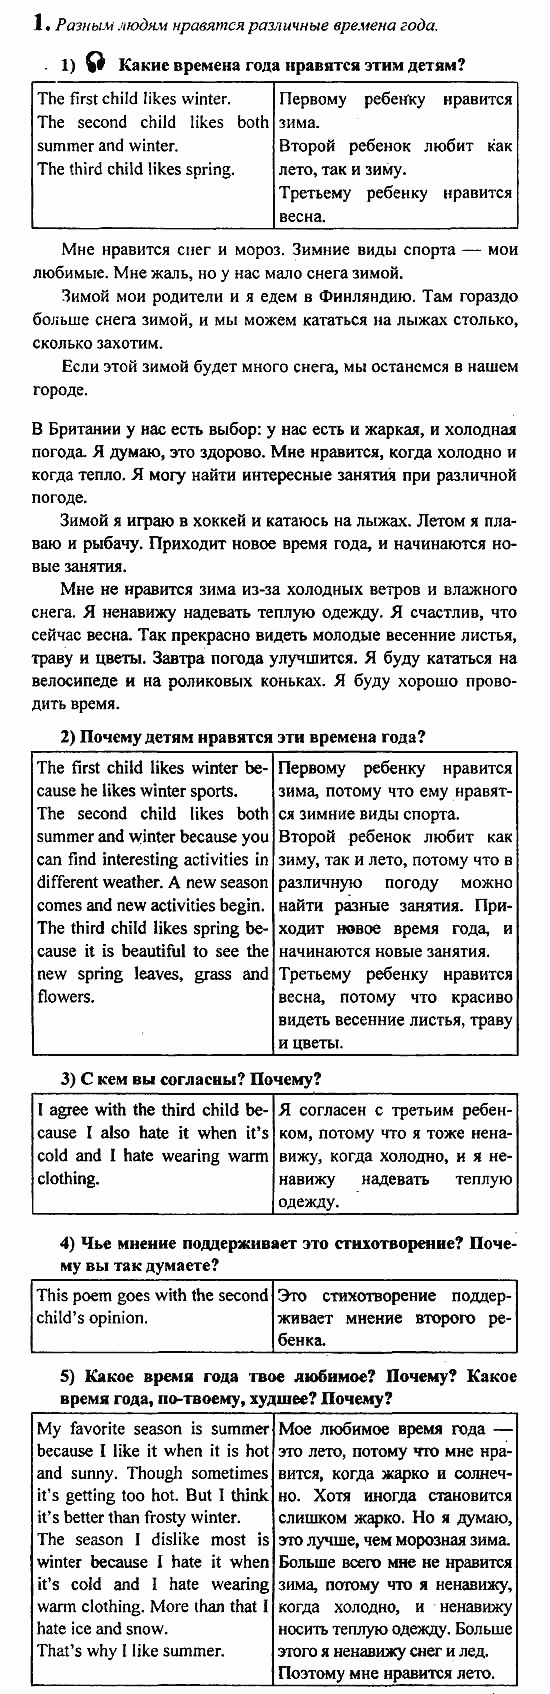 Student's Book - Activity book - Reader, 6 класс, Кузовлев, Лапа, 2007, урок 4 Задание: 1